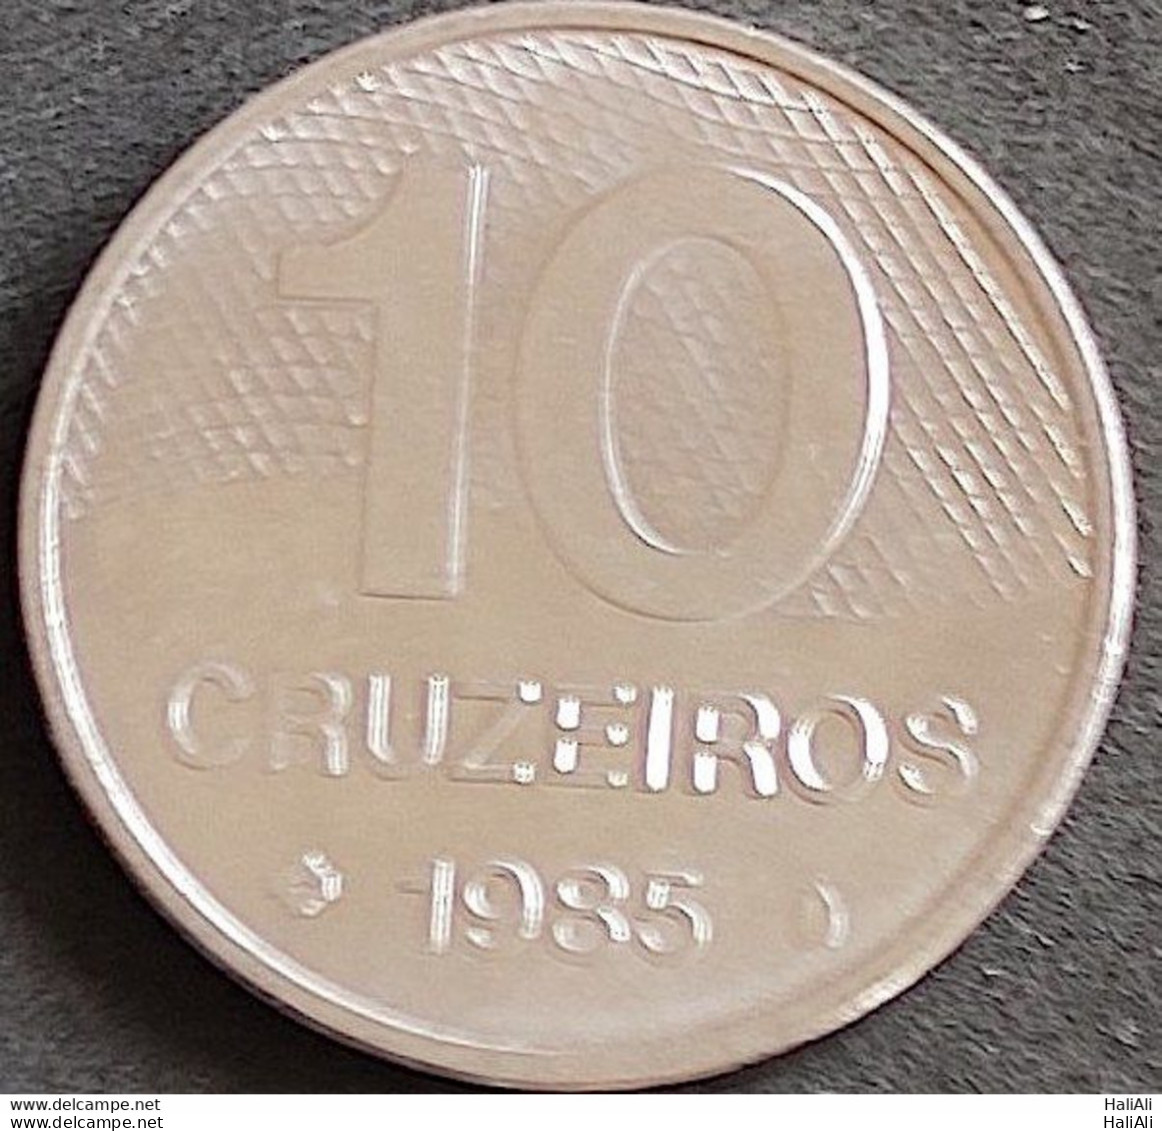 Coin Brazil Moeda Brasil 1985 10 Cruzeiros 1 - Brasile